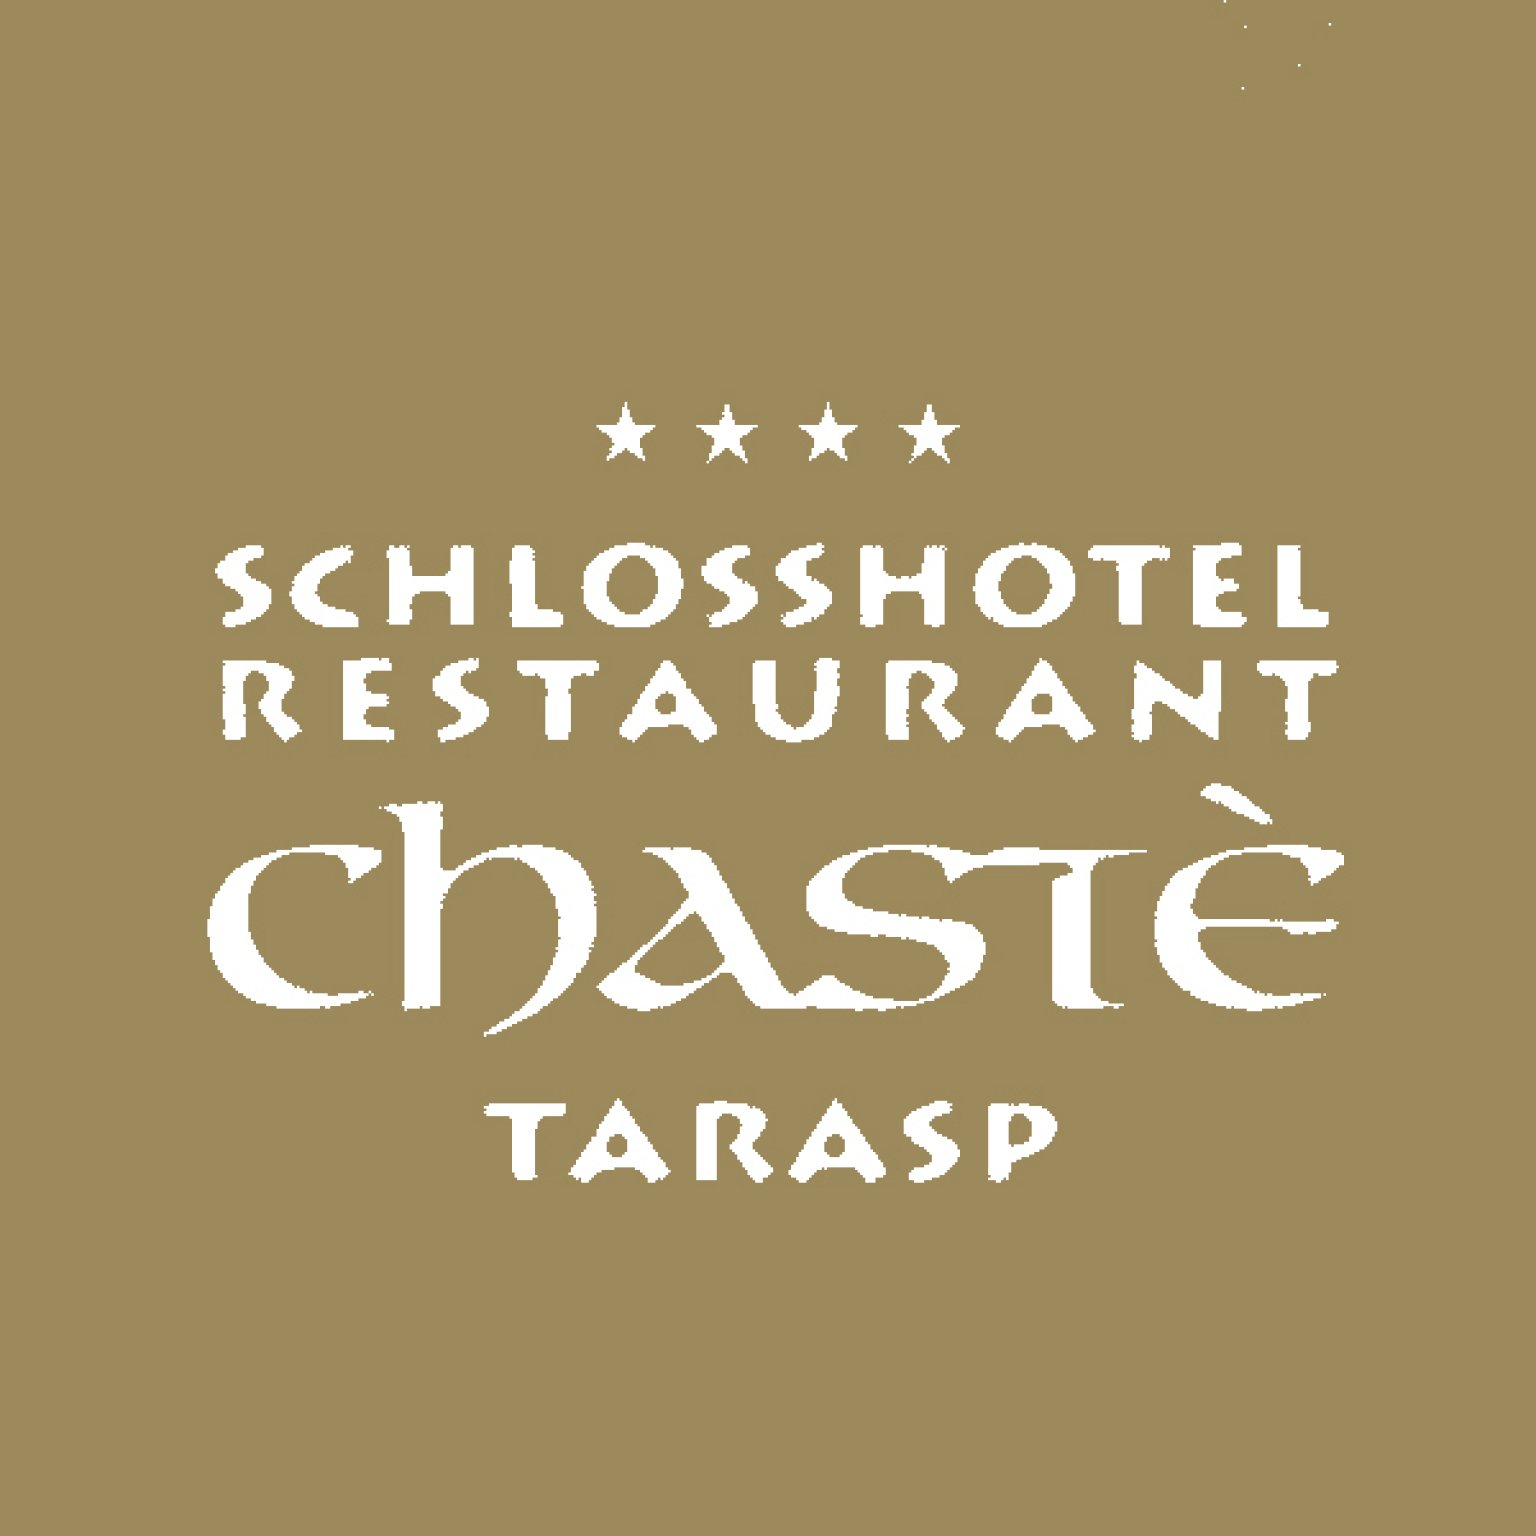 Logo Schlosshotel Restaurant Chastè Tarasp.